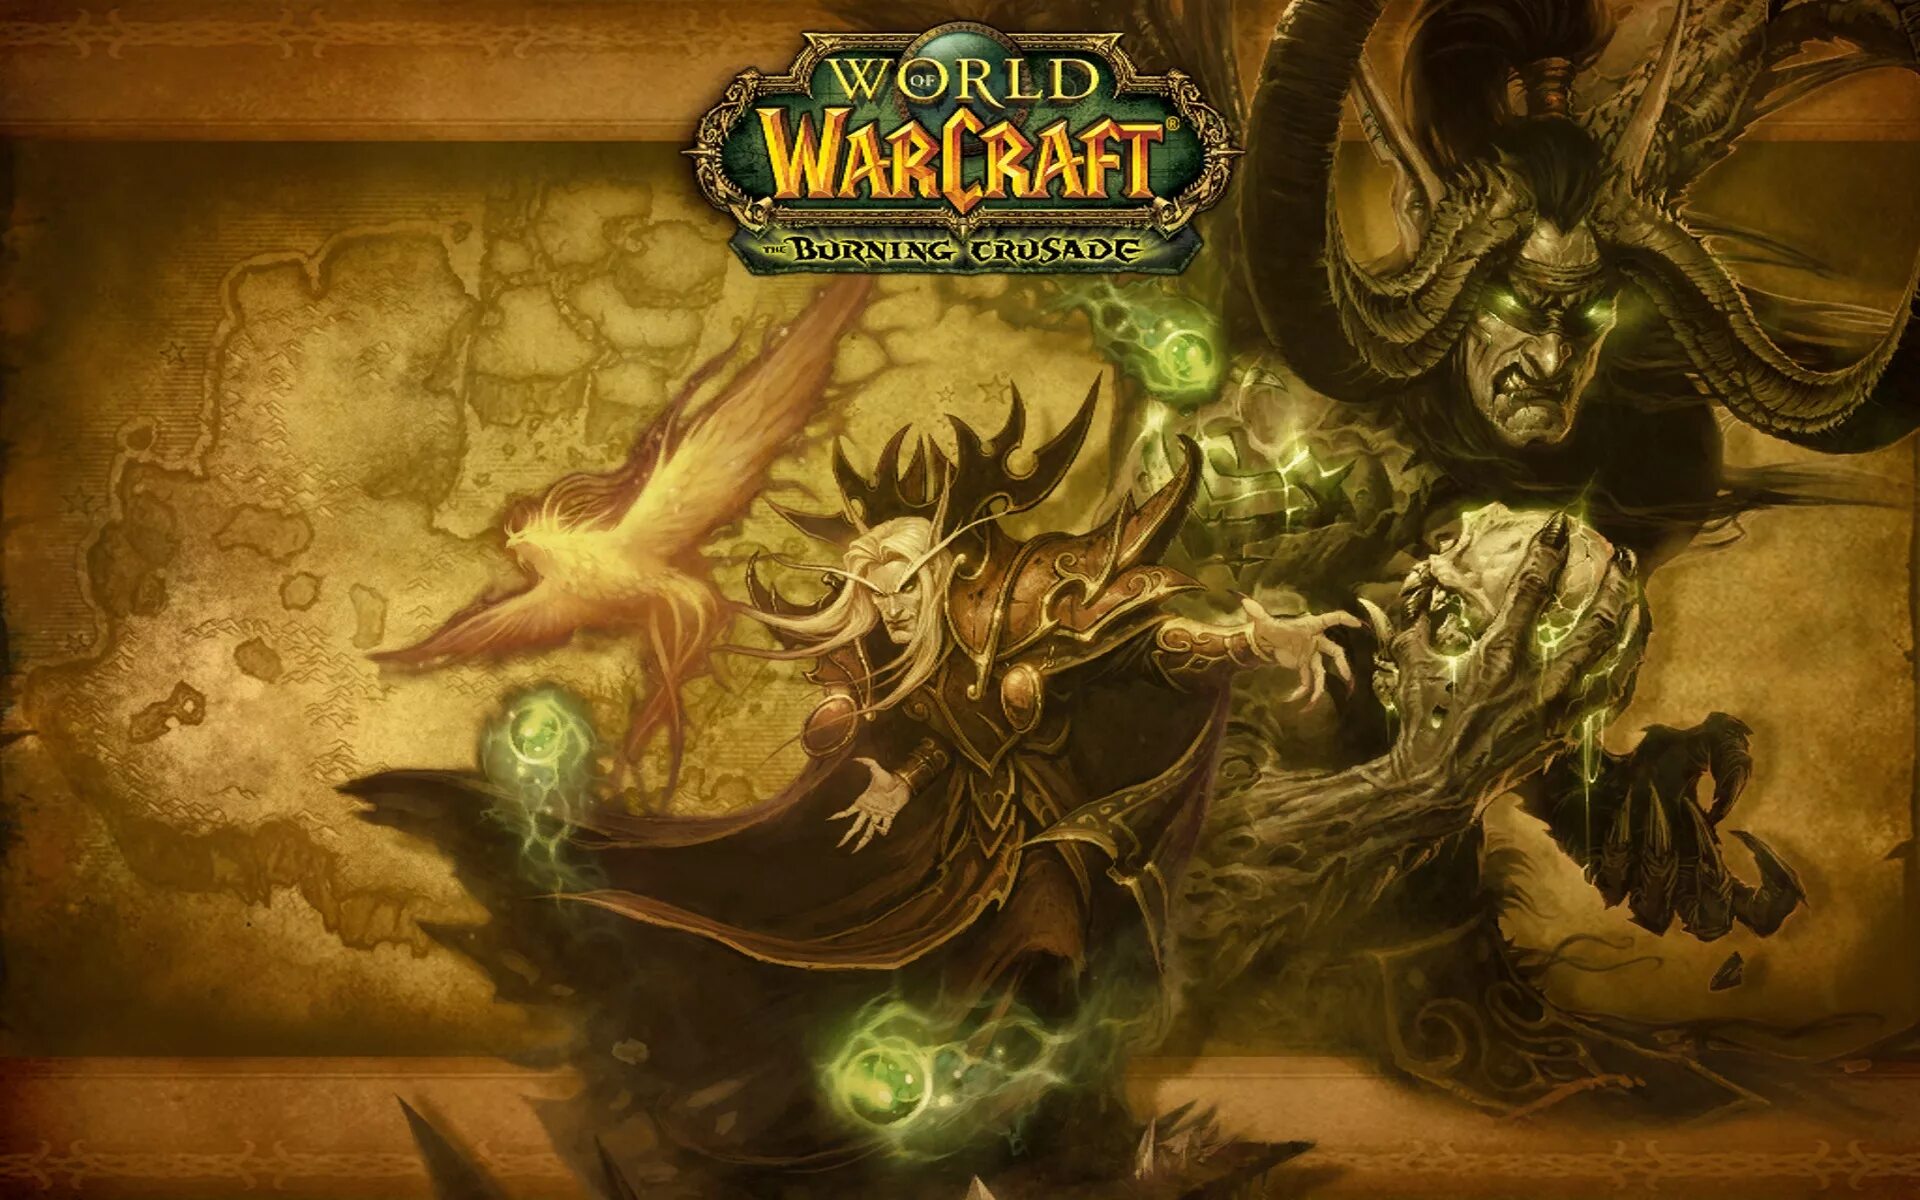 World of Warcraft загрузочные экраны. Warcraft 3 экран загрузки. Варкрафт 3 Бернинг Крусейд. World of Warcraft Burning Crusade загрузочные экраны. Лк классик